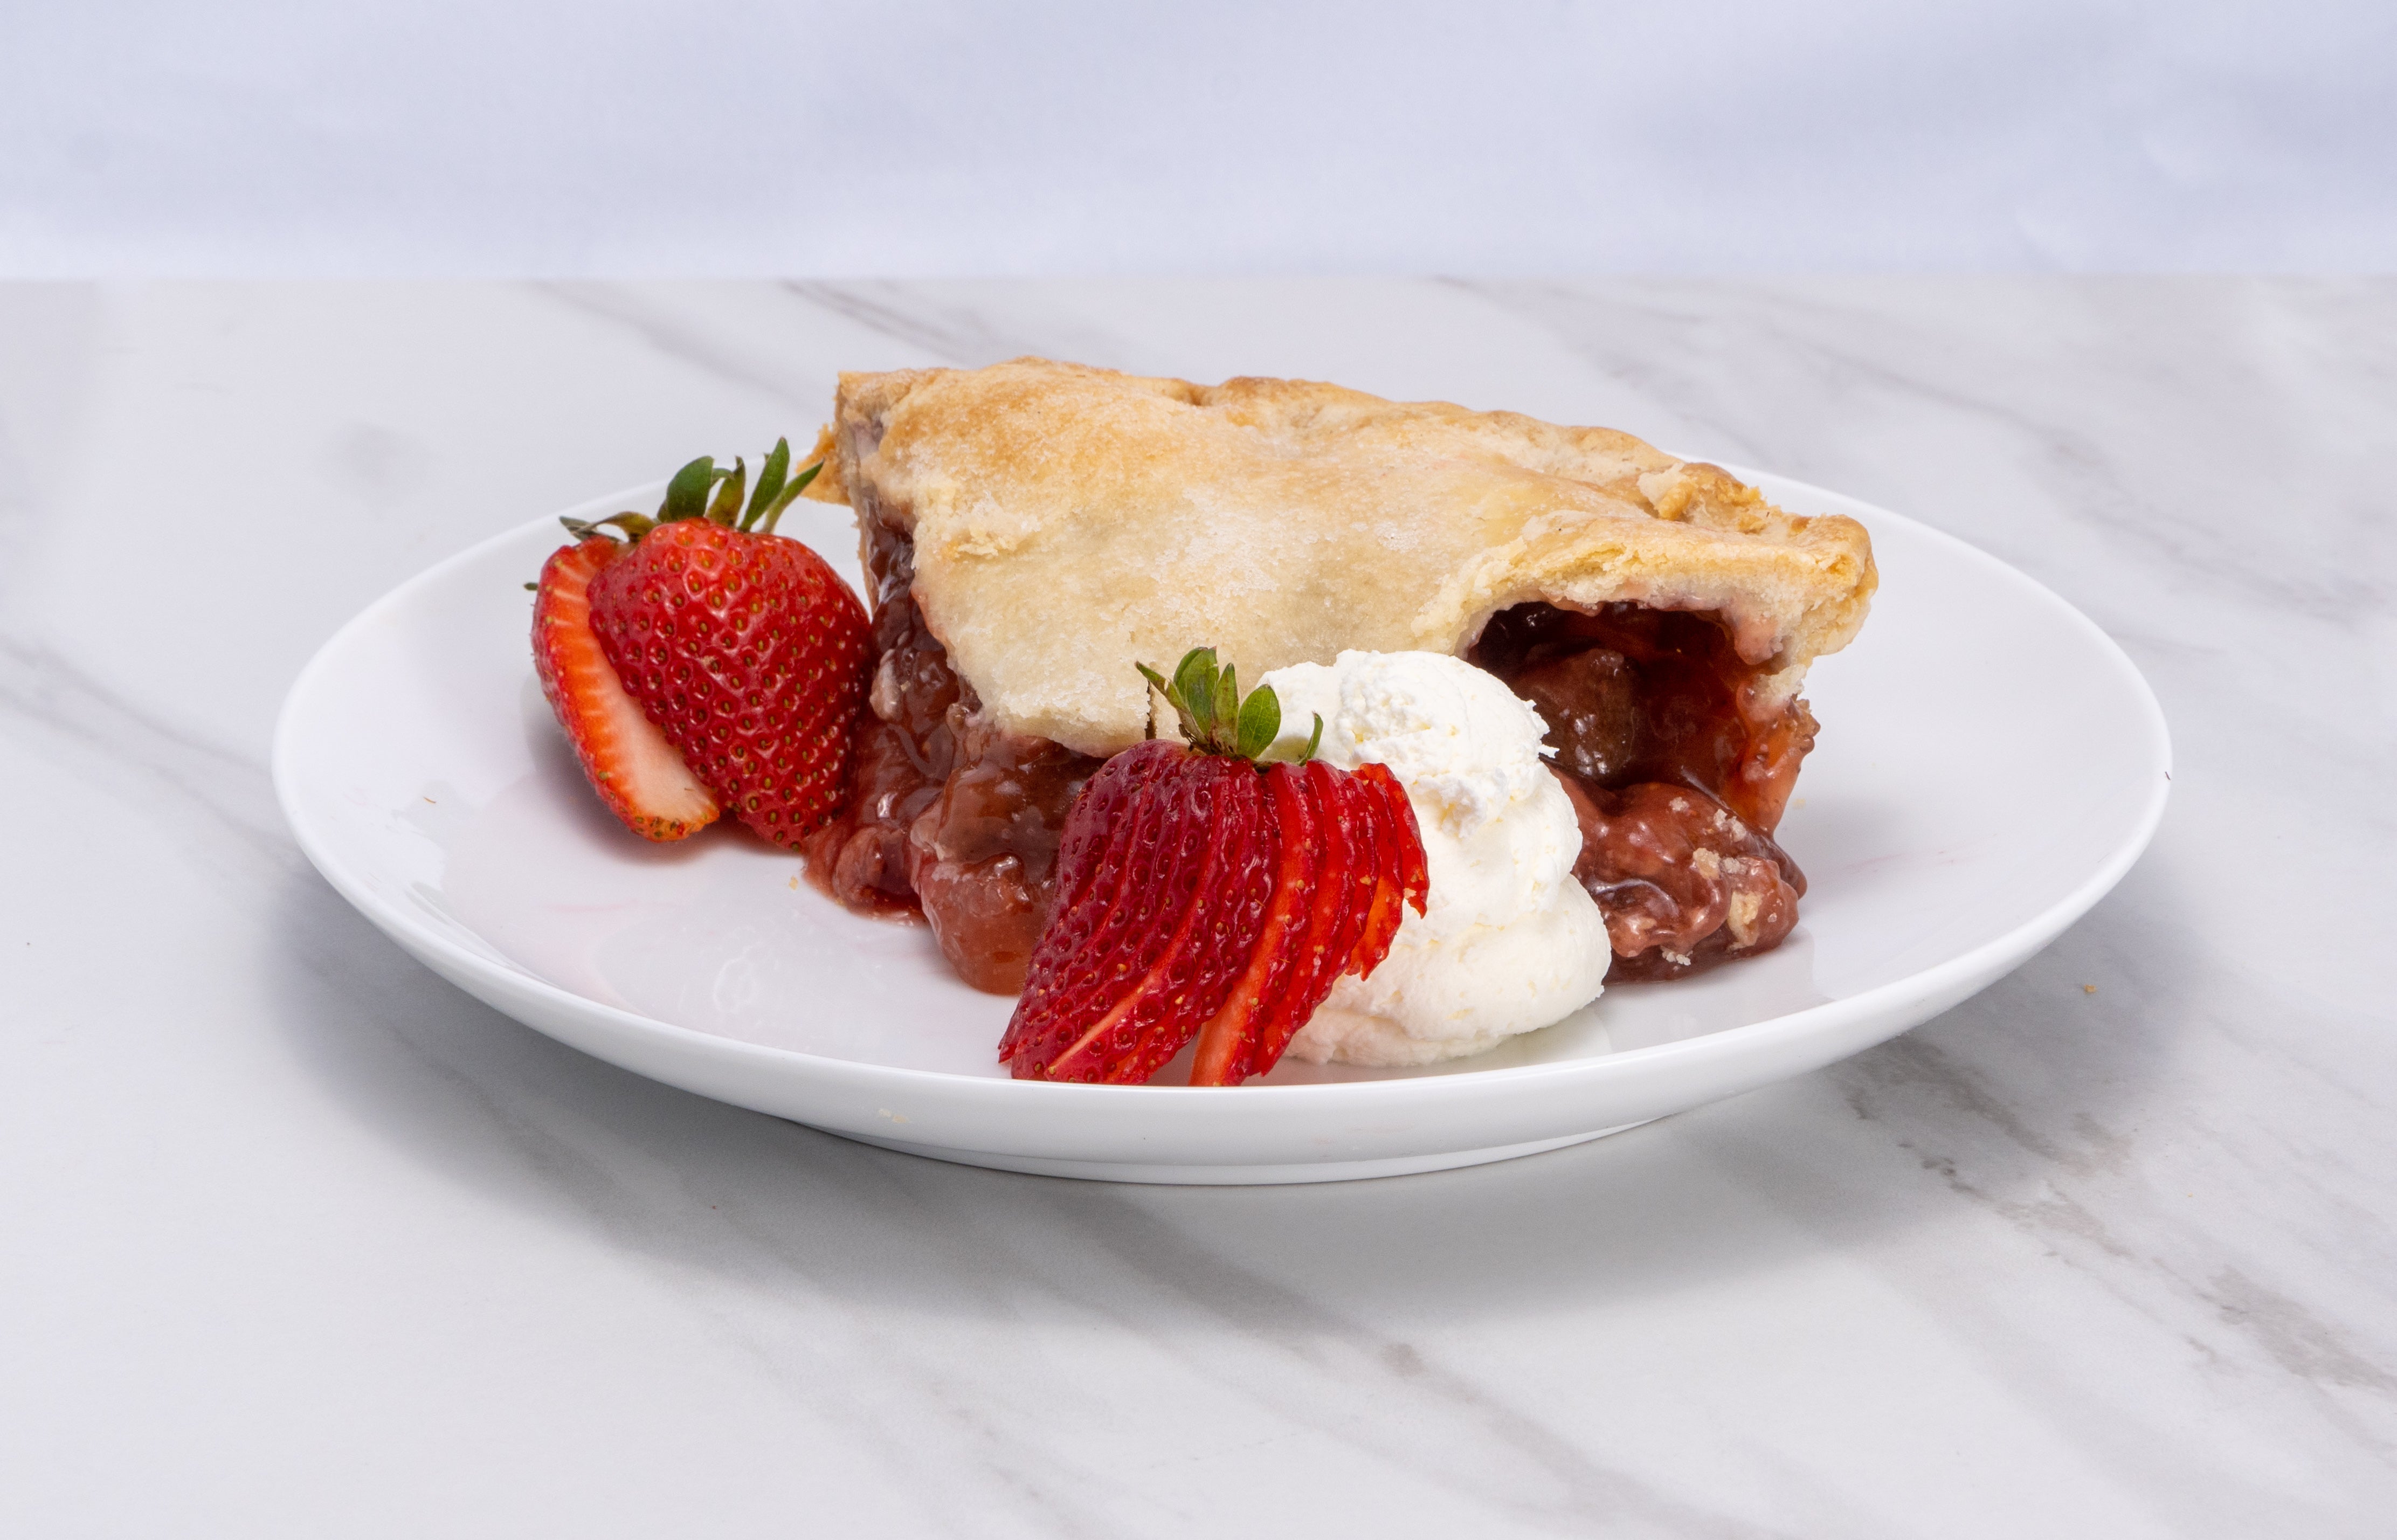 Strawberry Rhubarb Pie (8")